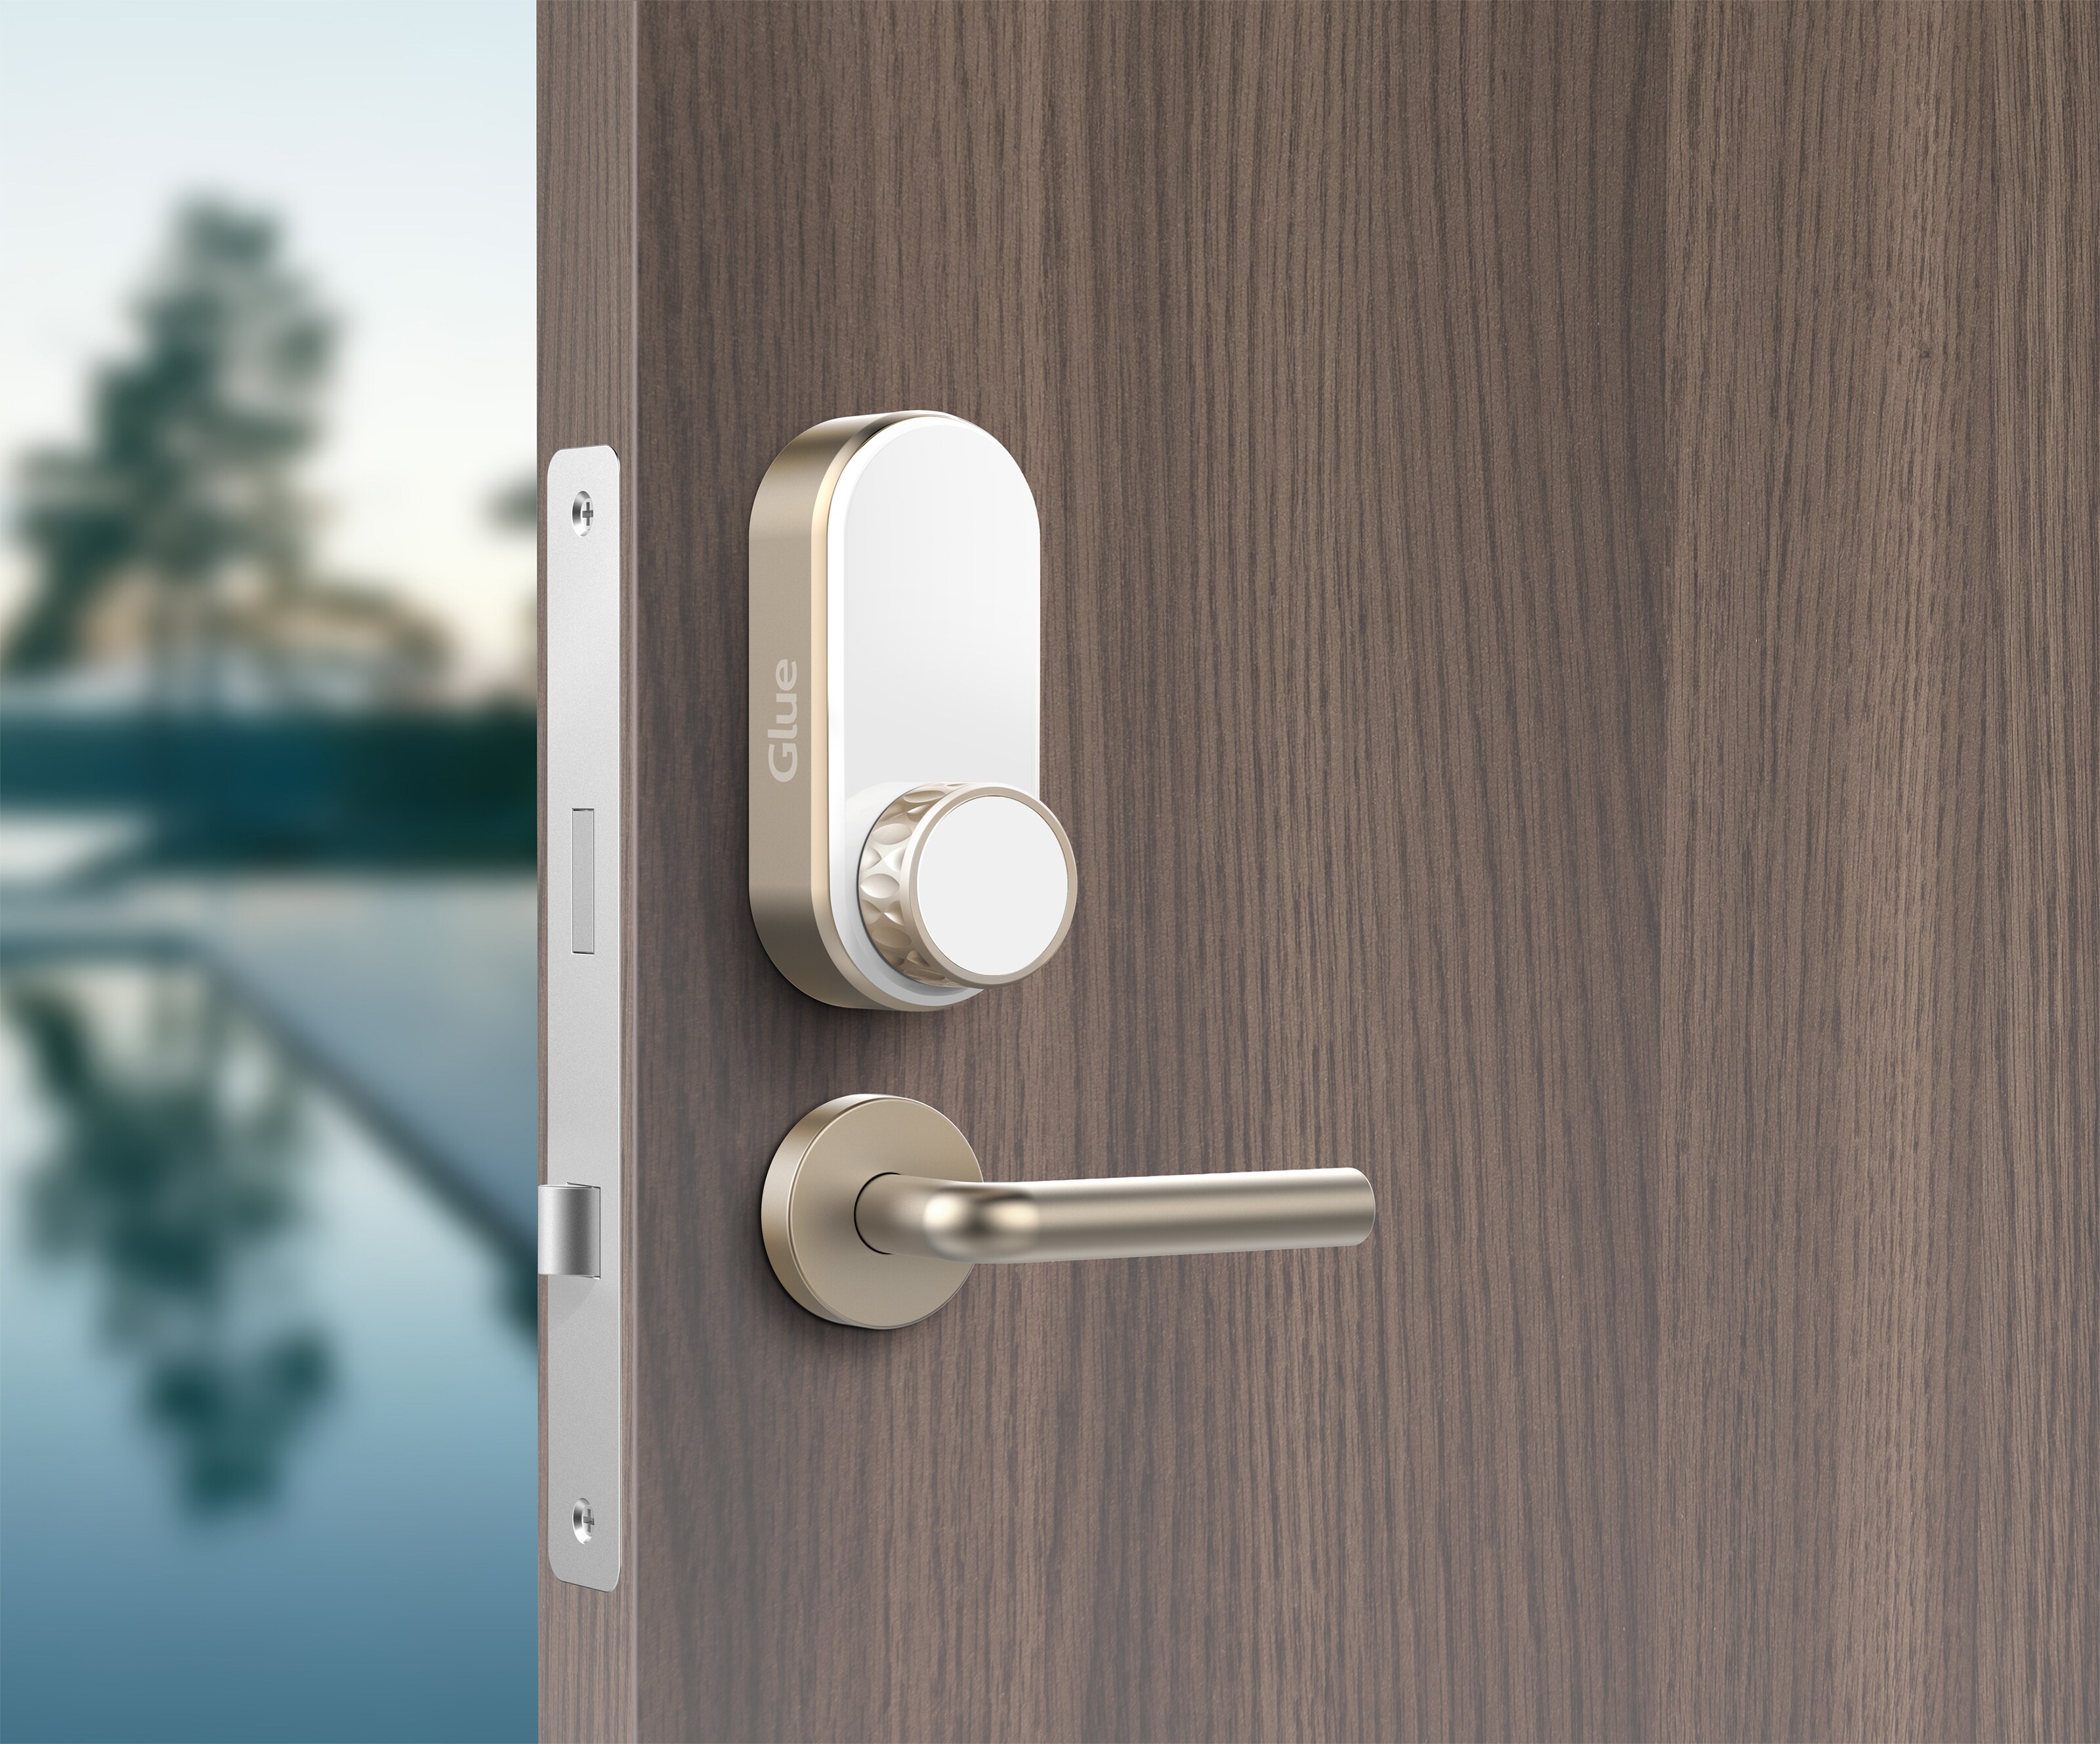 Glue Home smart trådlöst dörrlås (guld) - Elektroniskt dörrlås ...